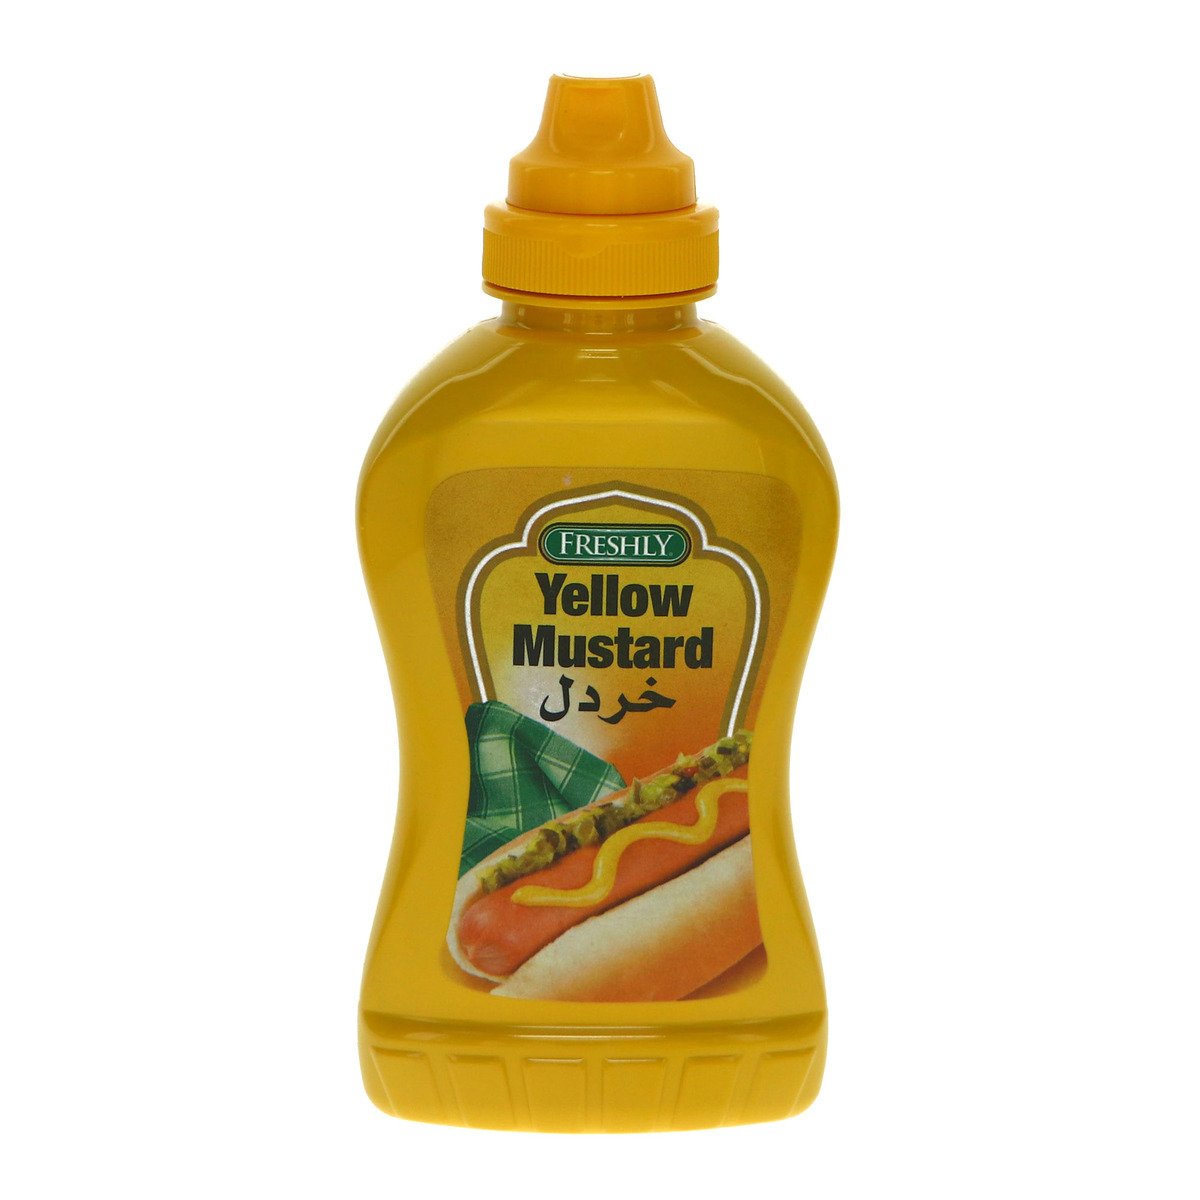 اشتري قم بشراء فرشلي خردل أصفر ضغاط 8 أونصة Online at Best Price من الموقع - من لولو هايبر ماركت Mustard في السعودية